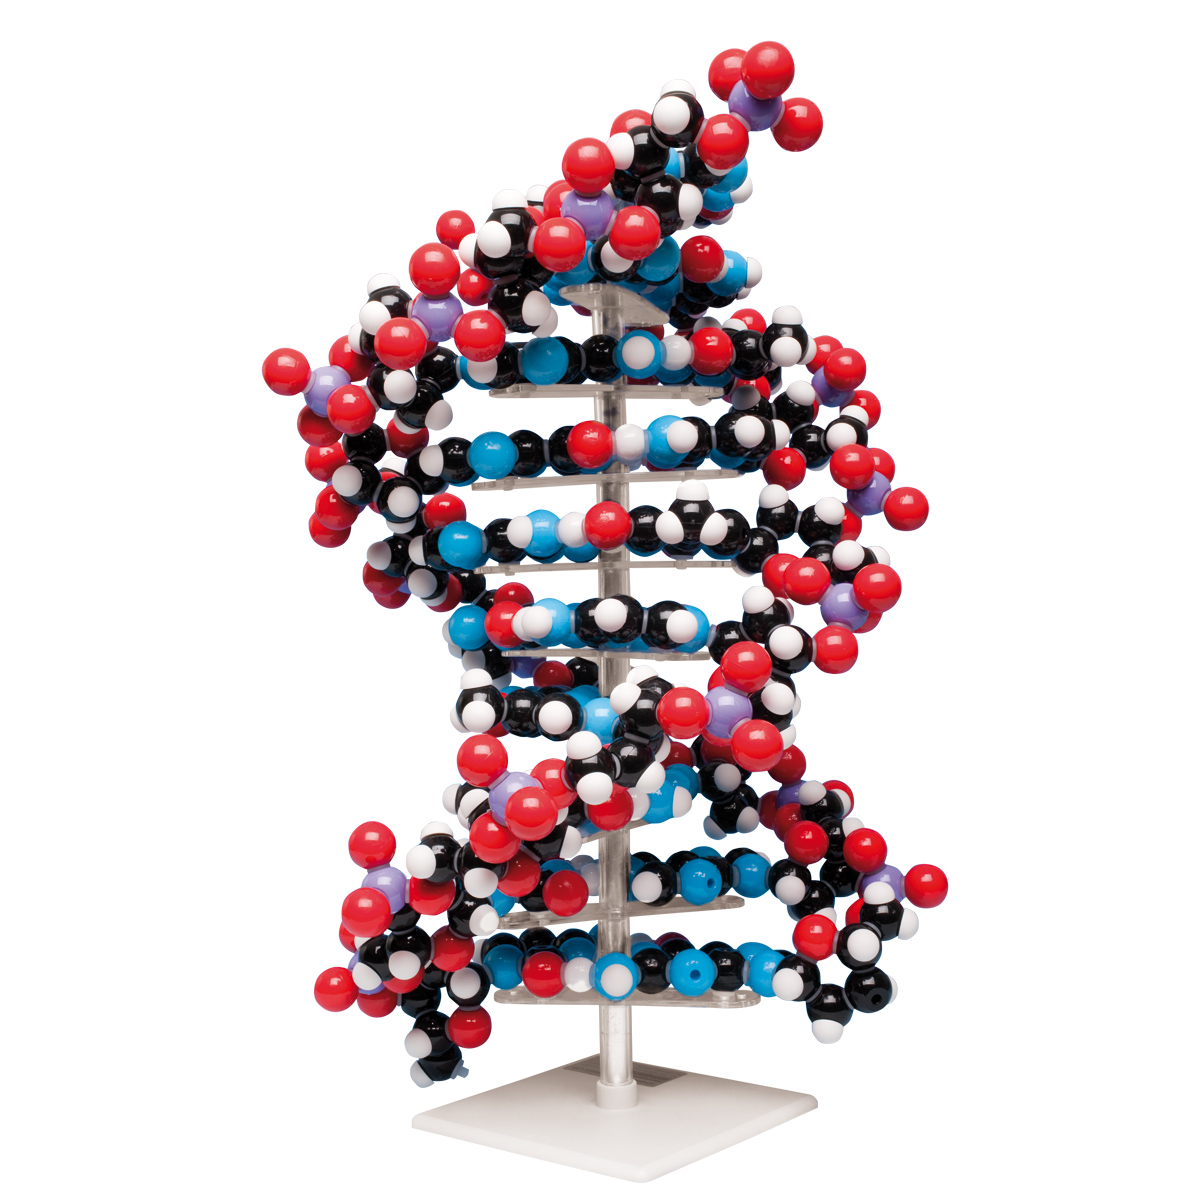 Modelo de DNA Gigante - 1020358 - W19755 - Molymod - MKS-122-10 - Estrutura  e função do DNA - 3B Scientific